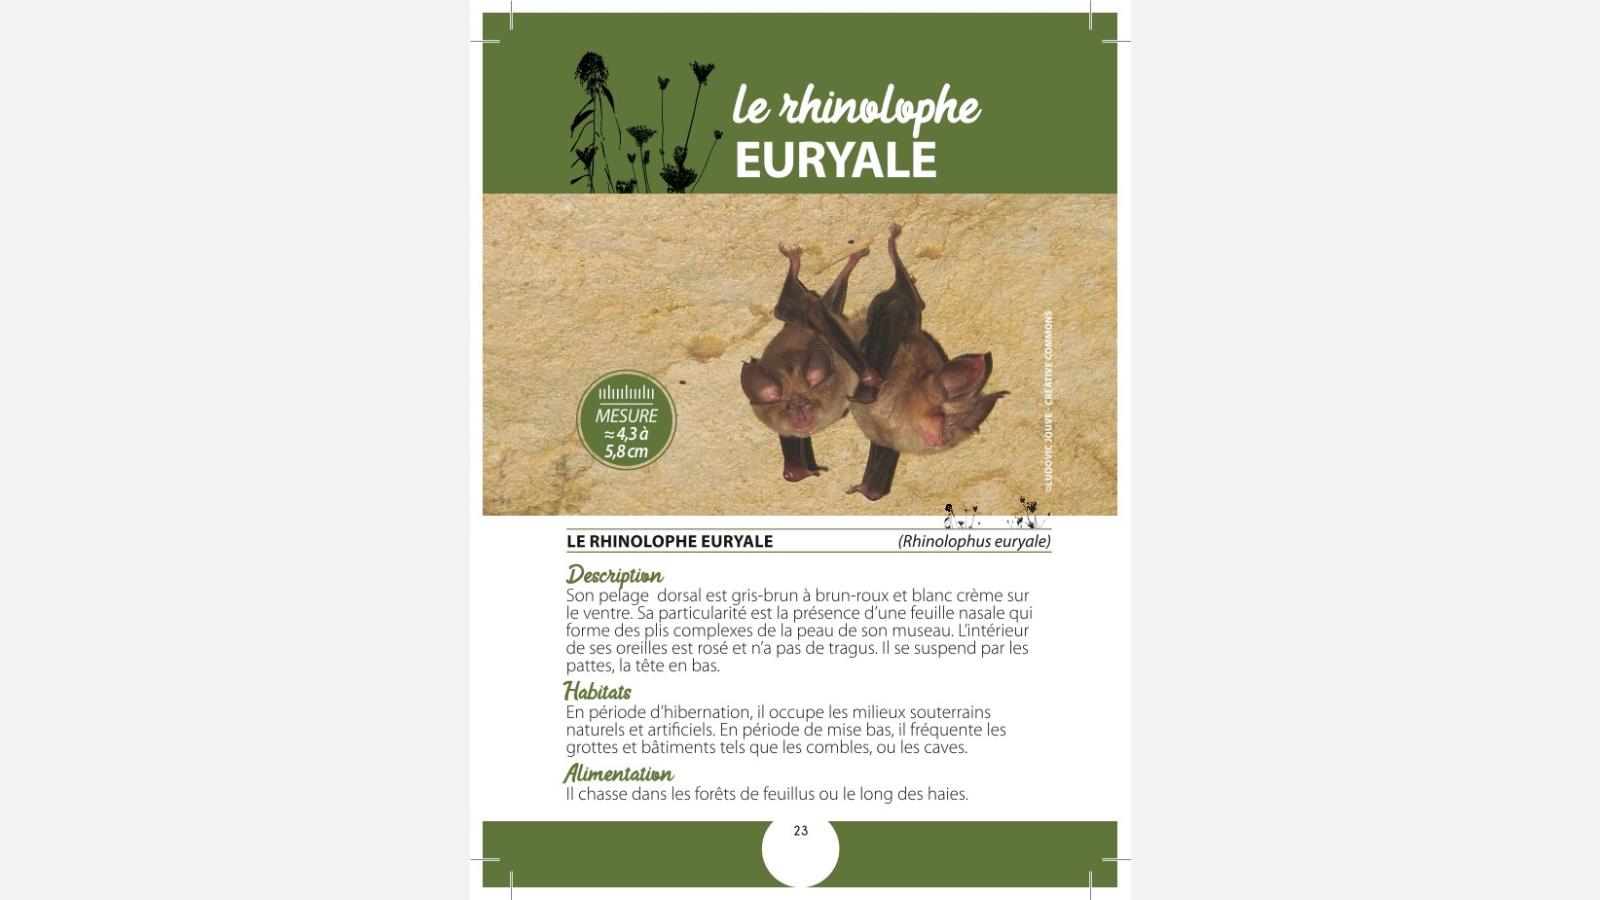 Carnet des espèces Natura 2000